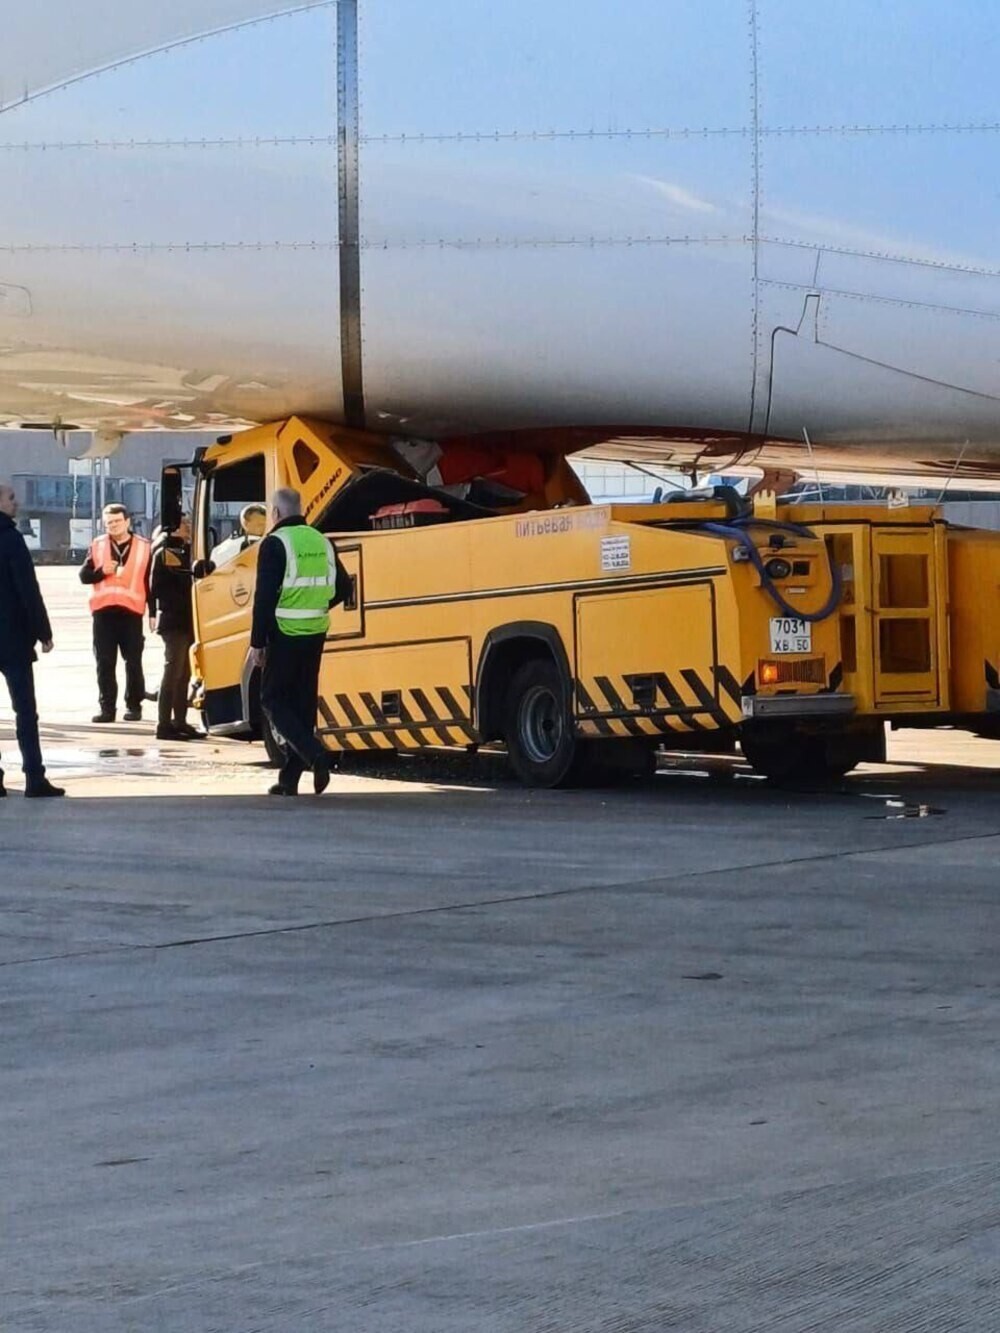 Аэропорт Домодедово может заплатить до миллиарда рублей компенсации из-за водовоза, протаранившего самолёт из ОАЭ